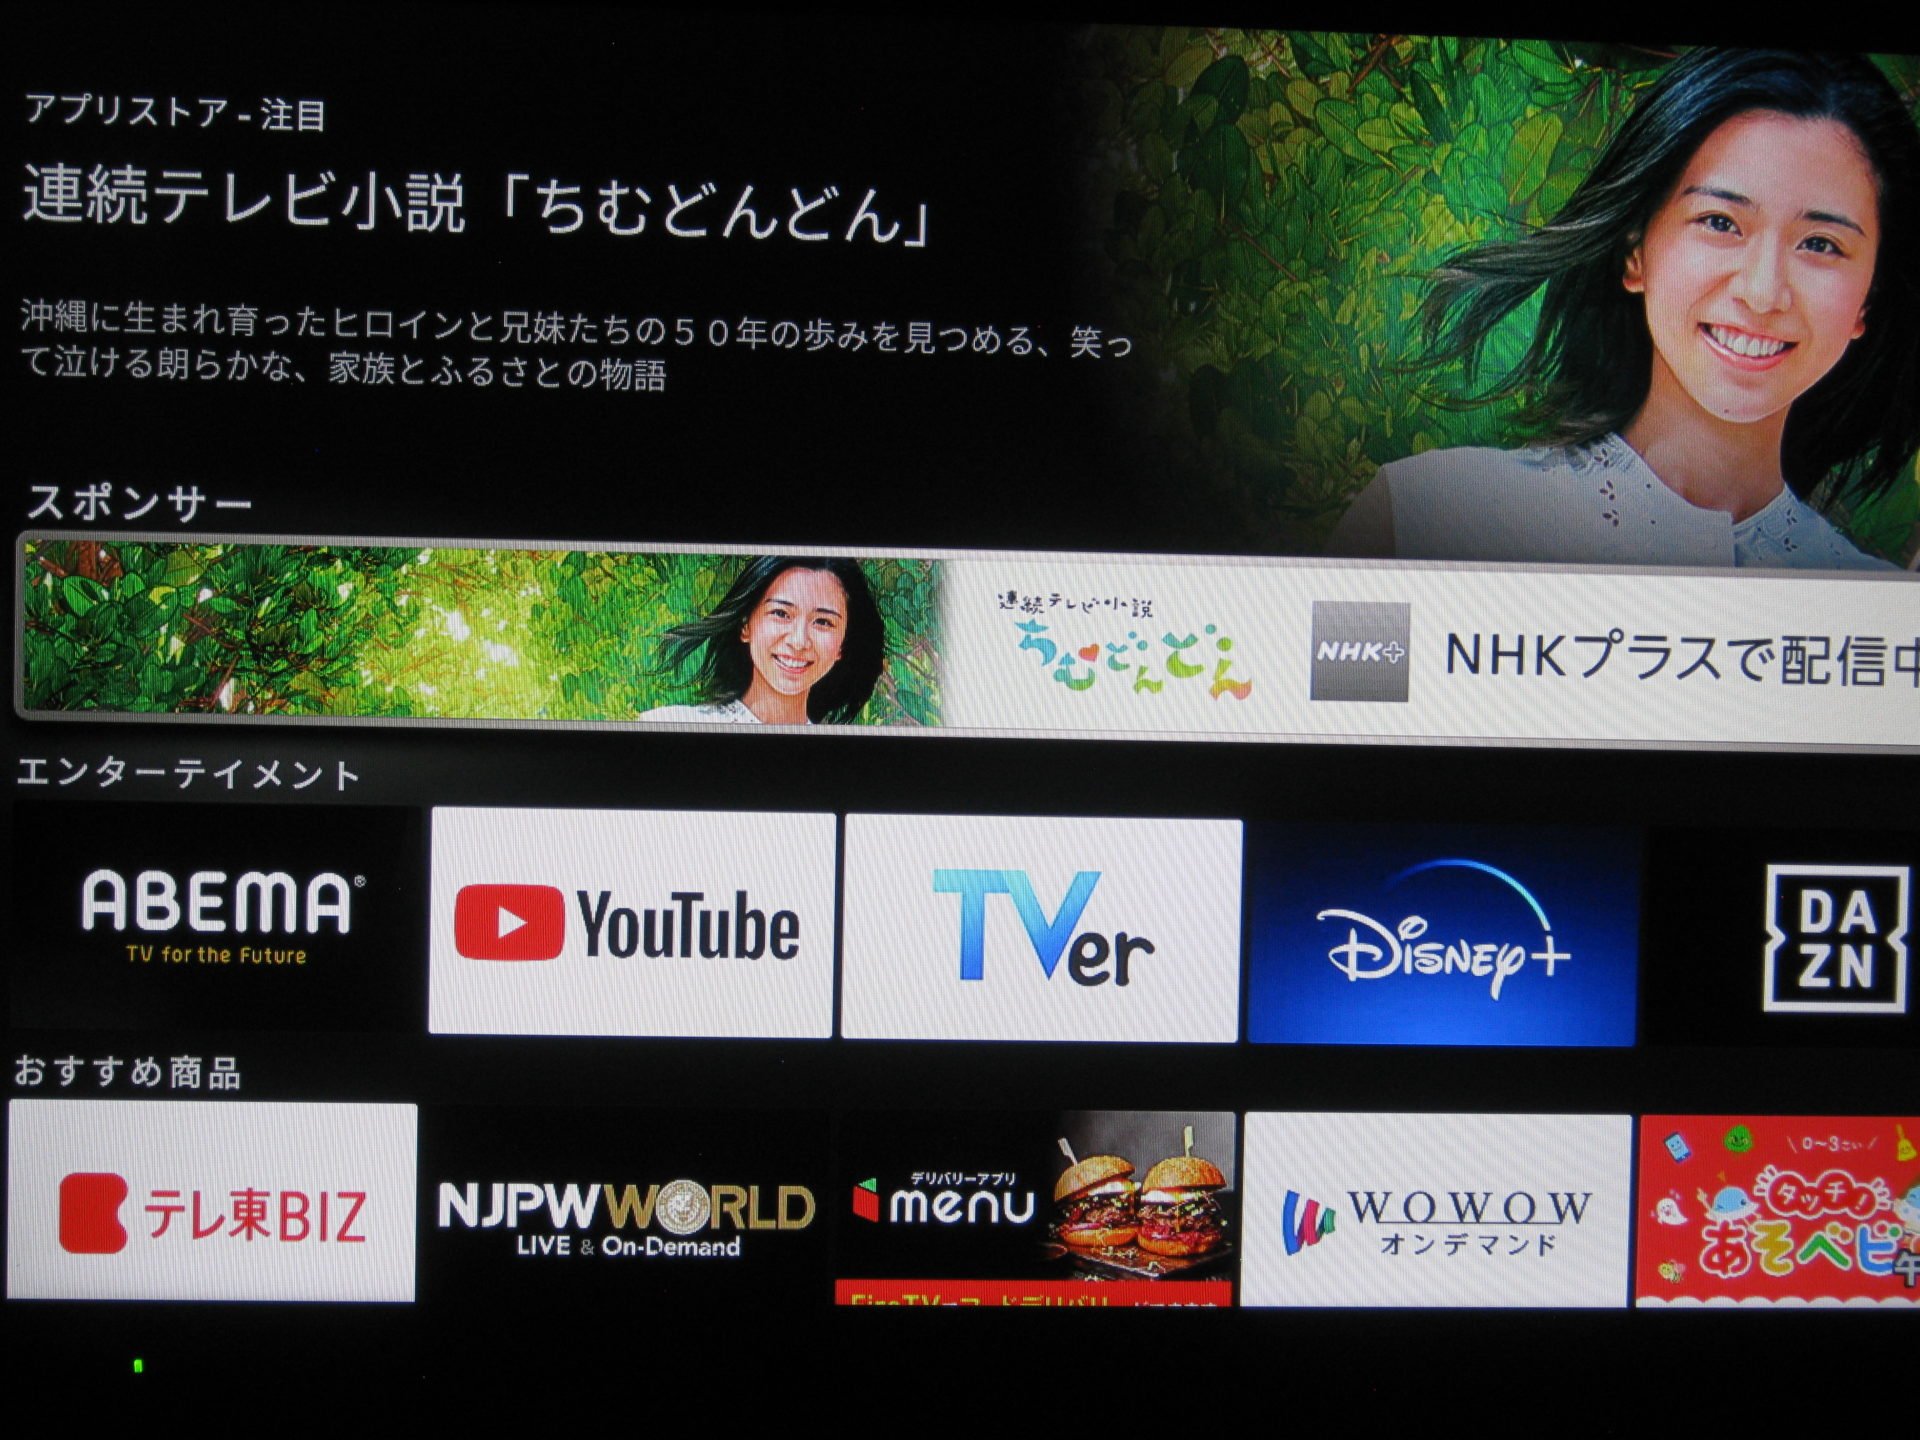 検索しなくても NHKプラス テレビ向けアプリ が表示されていたのでクリック